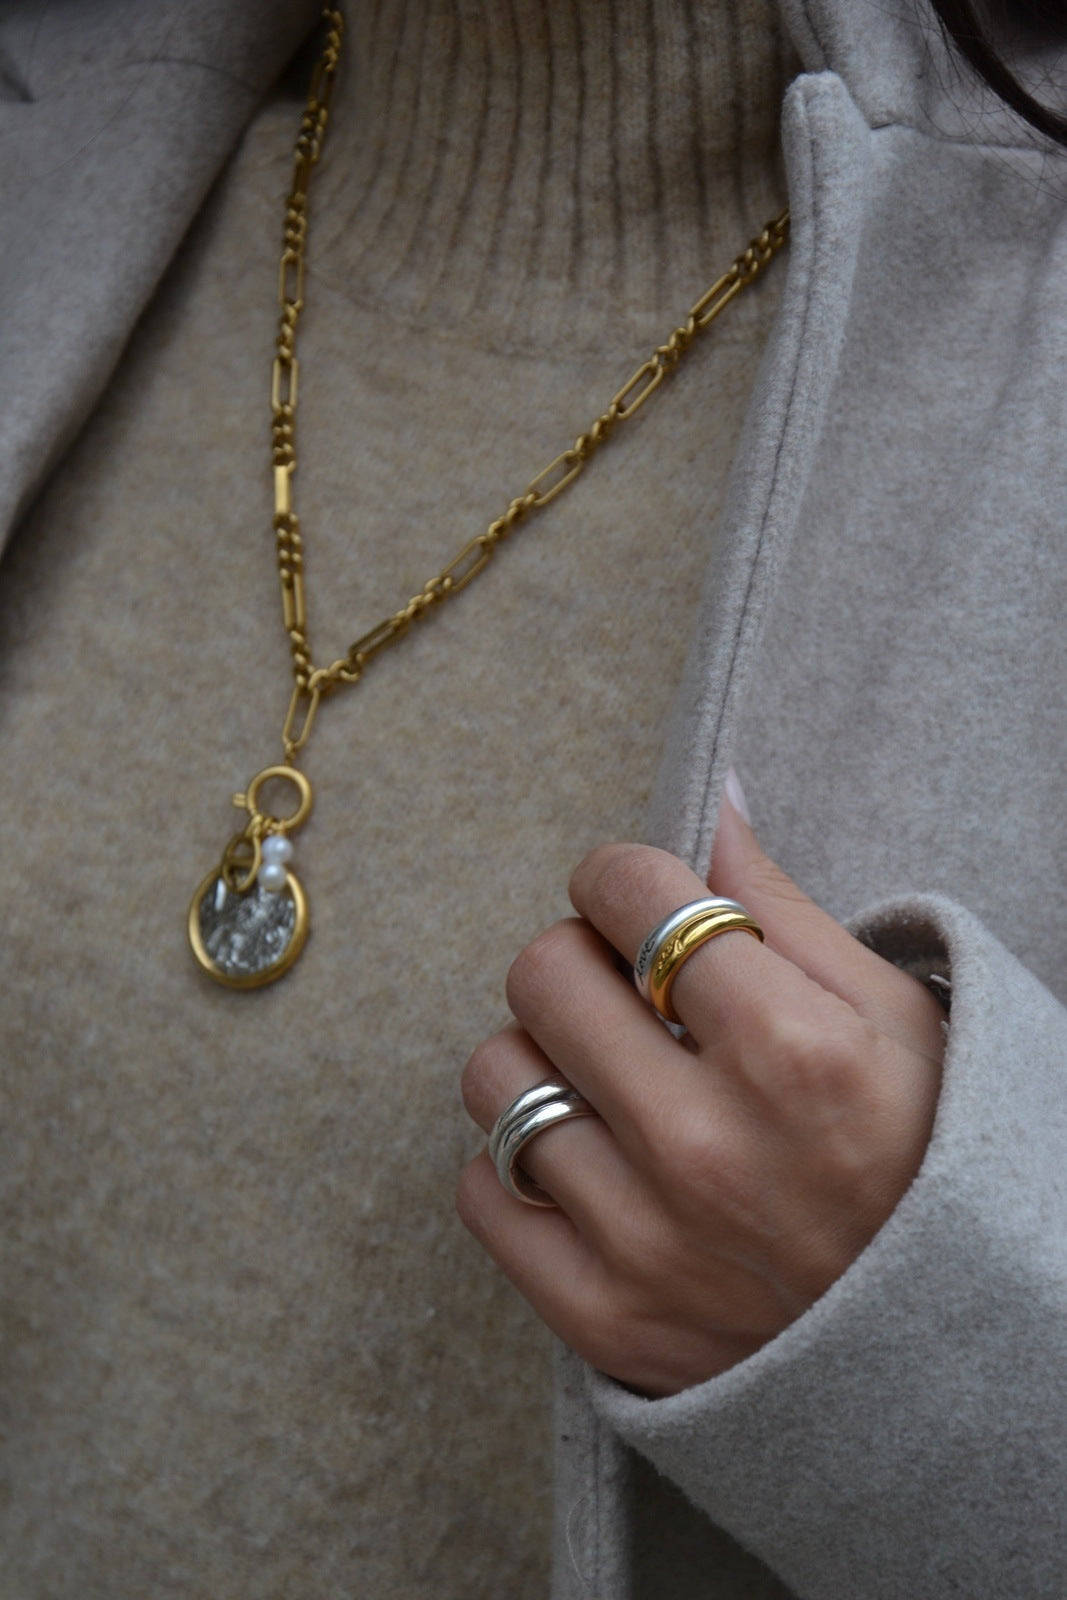 Collier plaqué or et argenté,&nbsp;décoré d'une pièce suspendue et des perles d'eau douces, fait main par nos artisans.Un bijou inspiré par les Tetradrachmes représentant la déesse grecque de la sagesse et son symbole, la chouette.